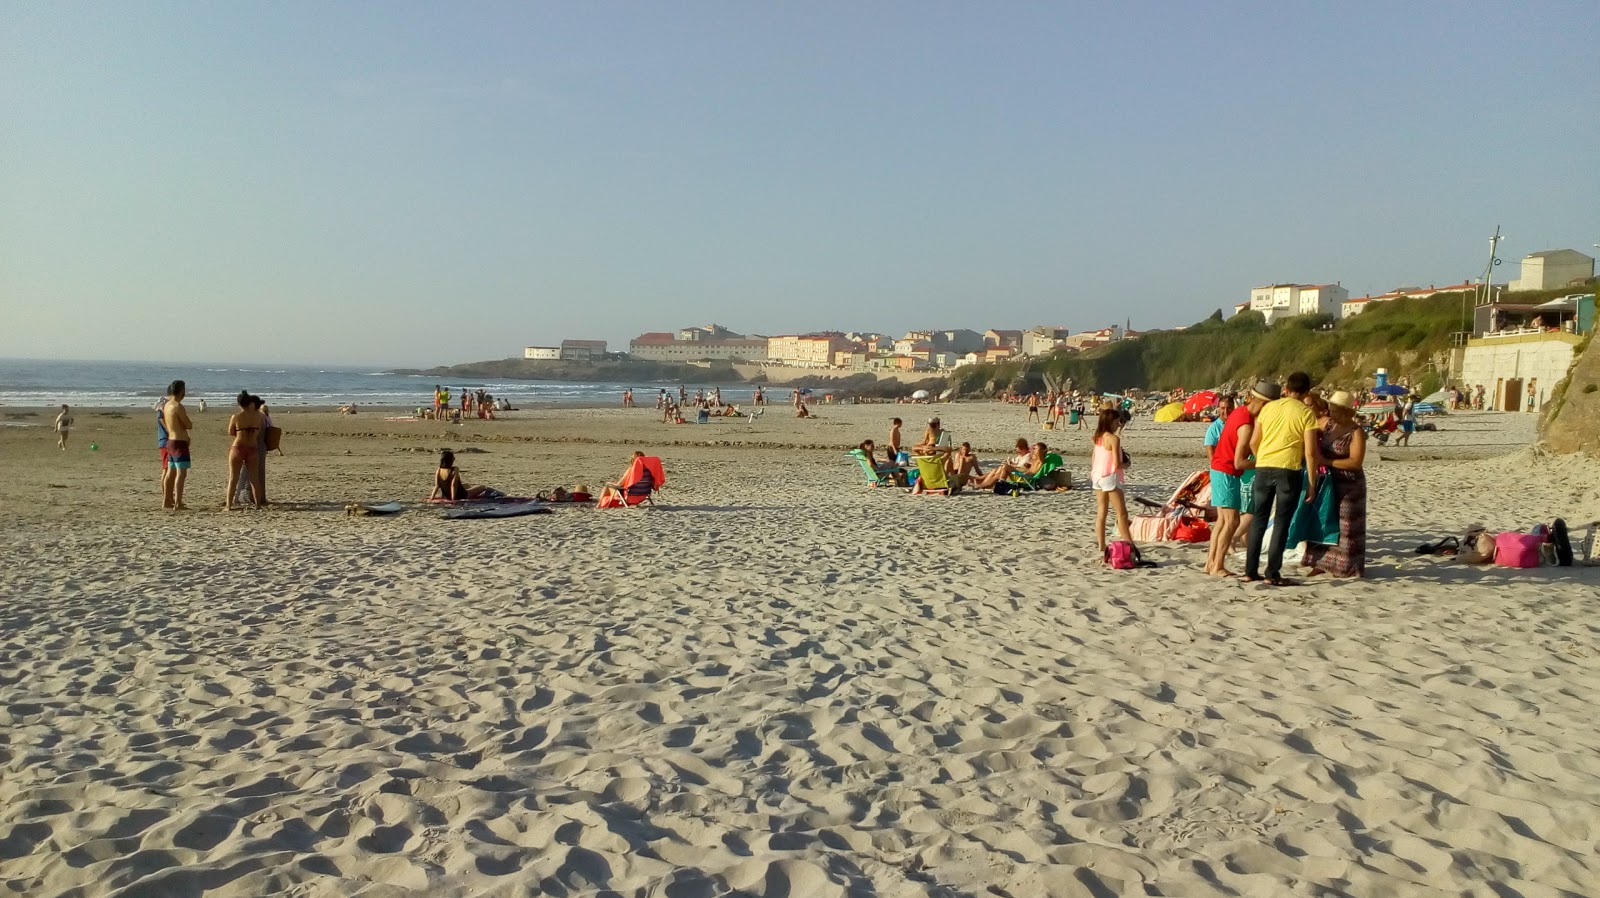 Praia de Caion'in fotoğrafı çok temiz temizlik seviyesi ile